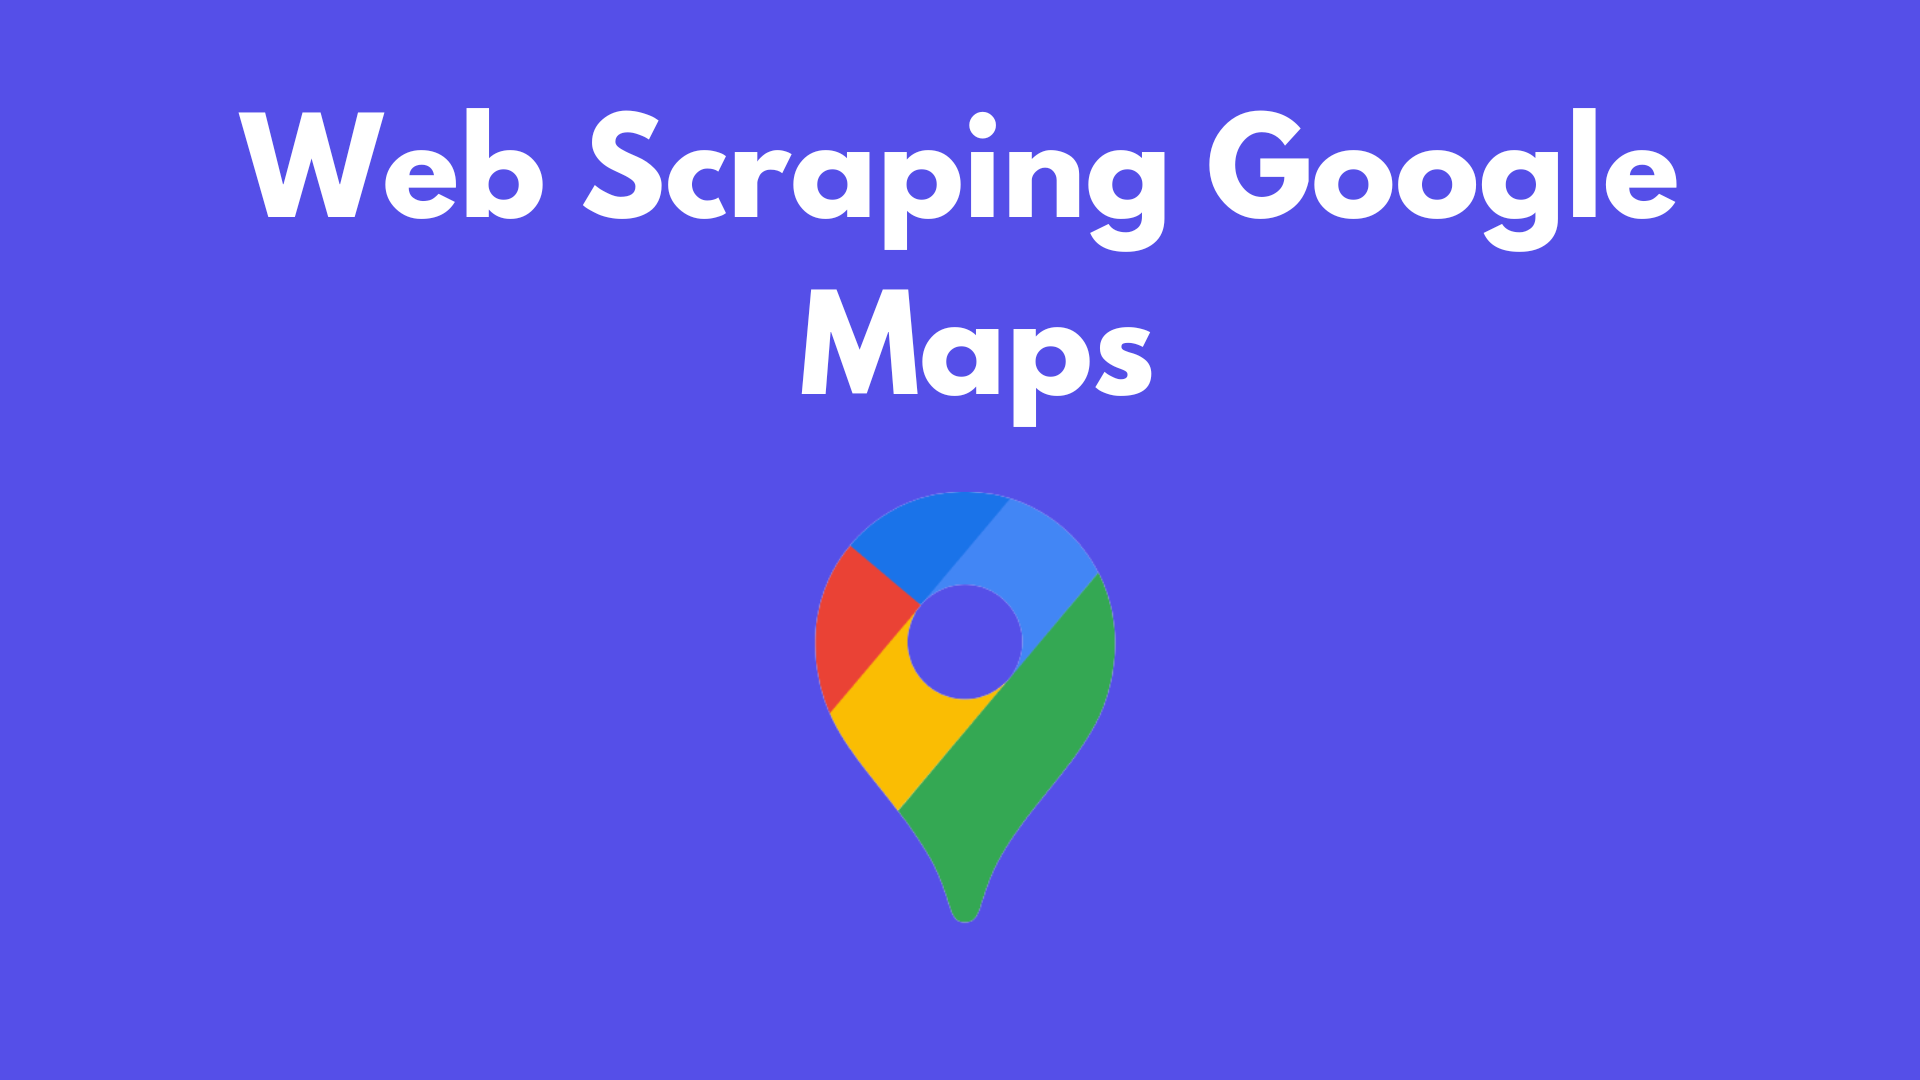 How to scrape Google Maps using Python